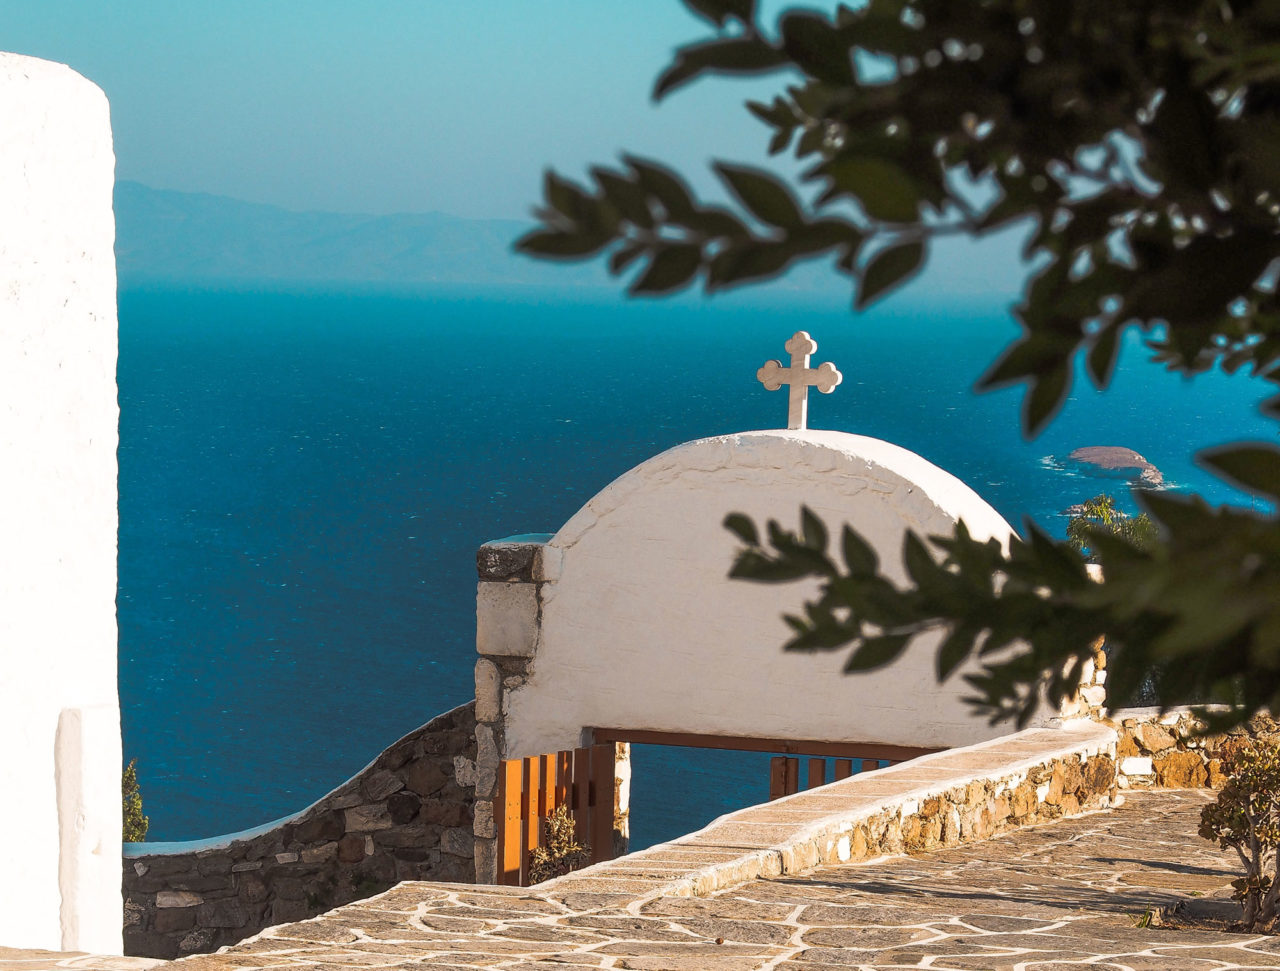 Viaggio nella Grecia Bizantina: le isole Tinos, Paros e Naxos